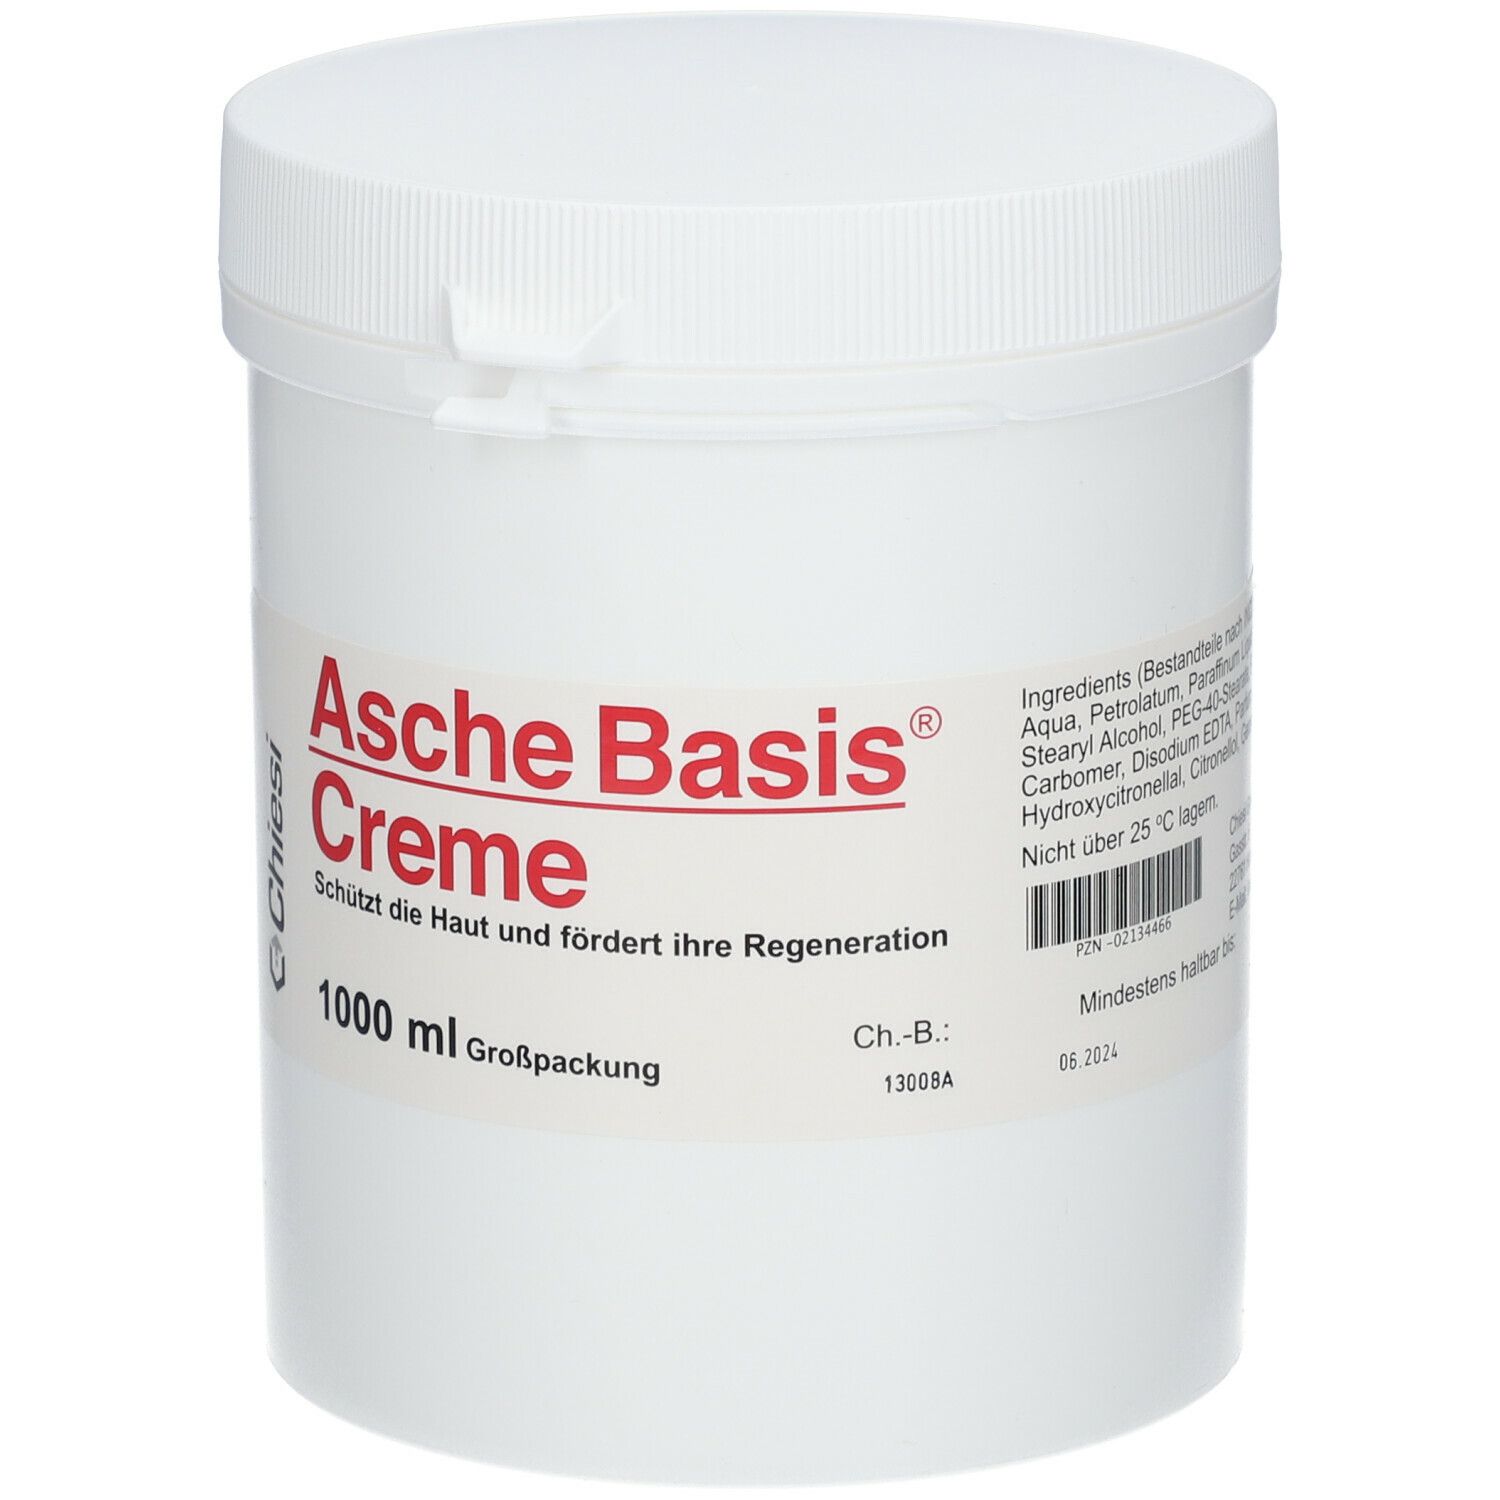 Asche Basis® Creme